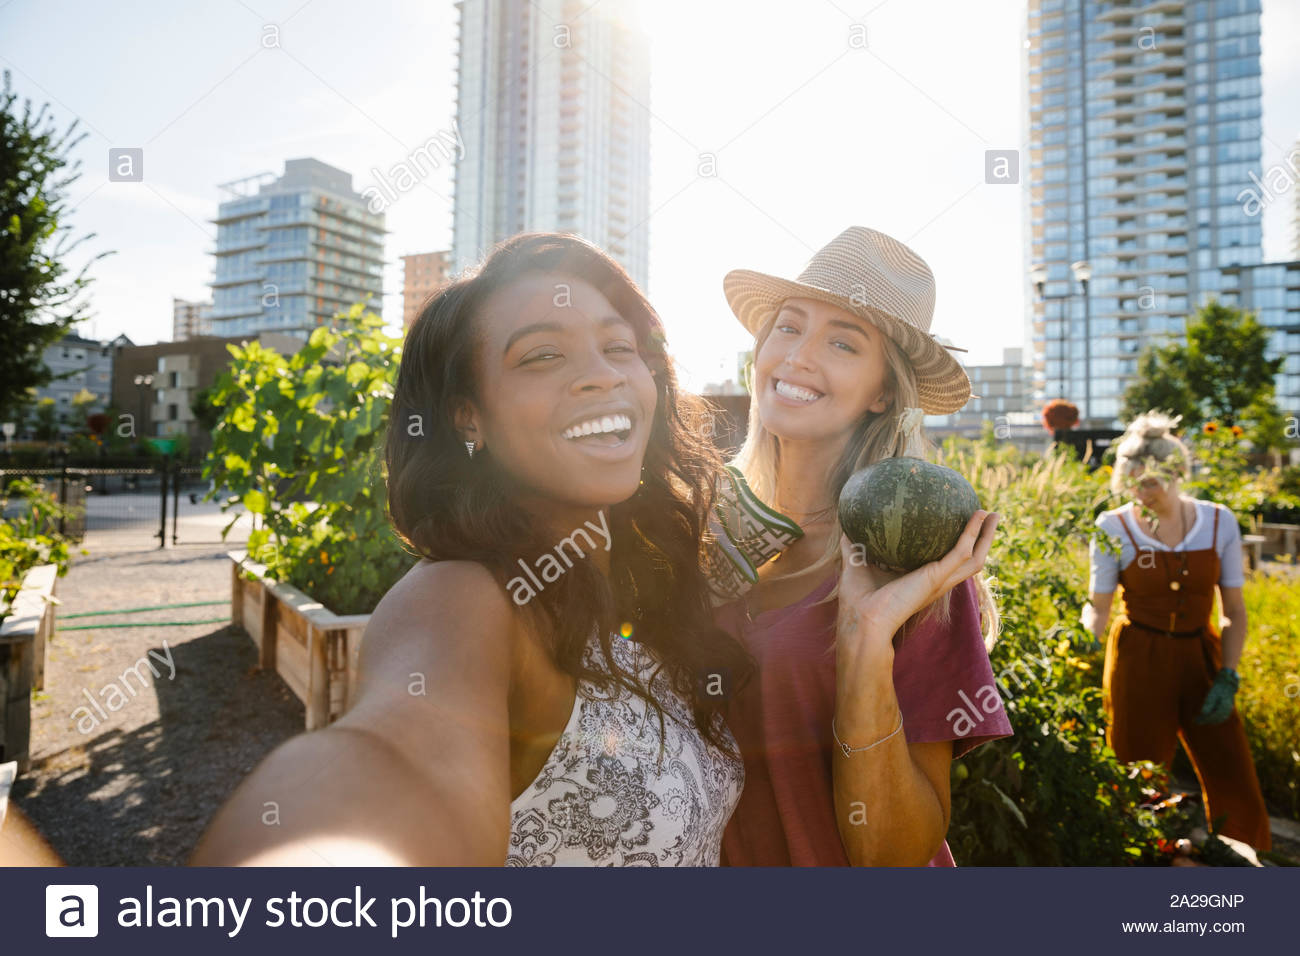 Persönliche Perspektive junge Frauen Freunde unter selfie in sonniger, städtischen Gemeinschaft garten Stockfoto